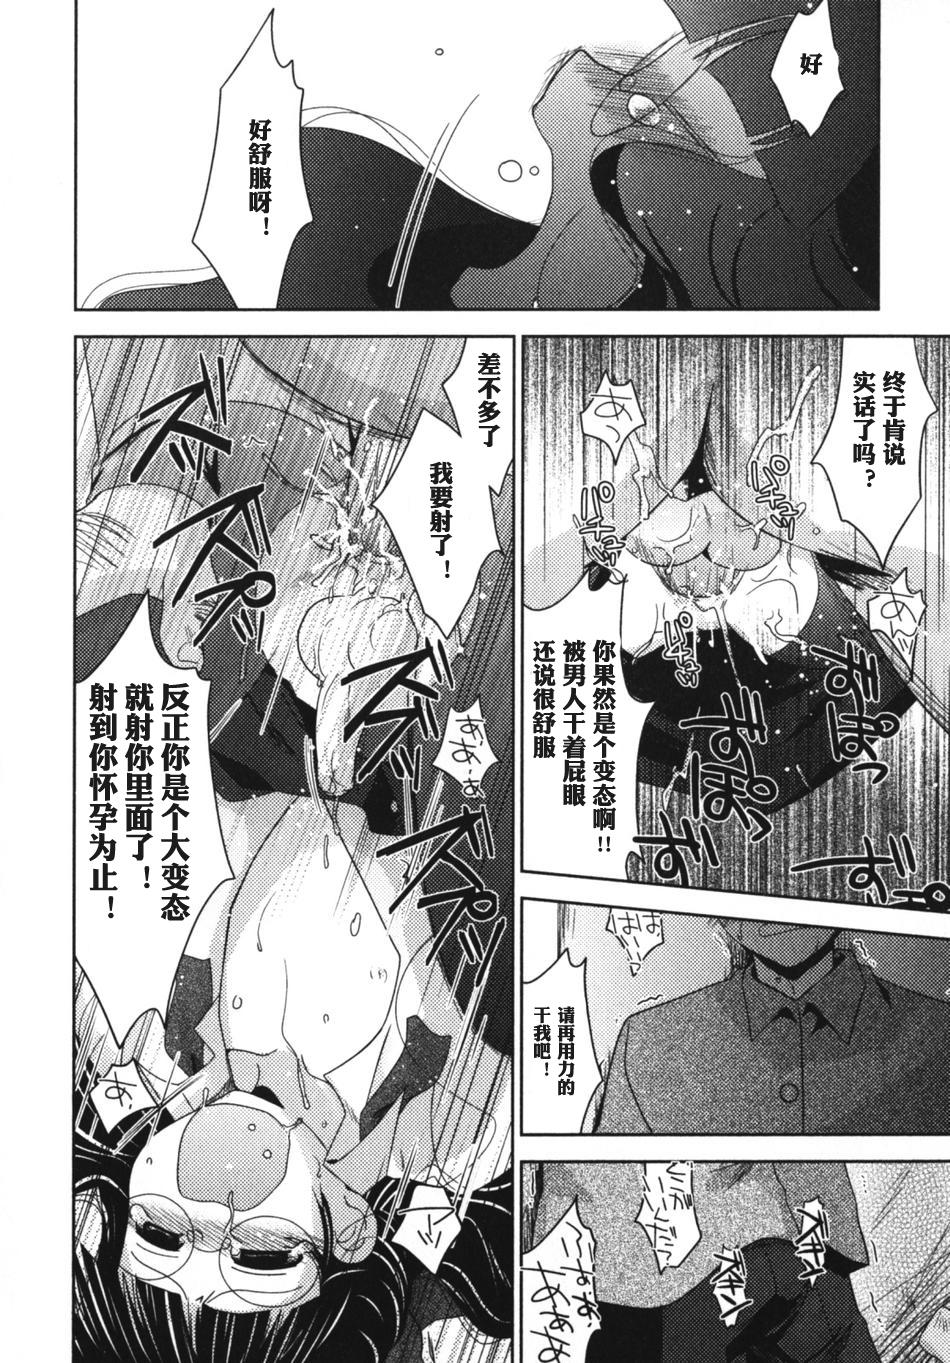 Rubdown Nee, Kotchi wo Muite, Soredemo Mada Kimi wa Kashima - Page 6